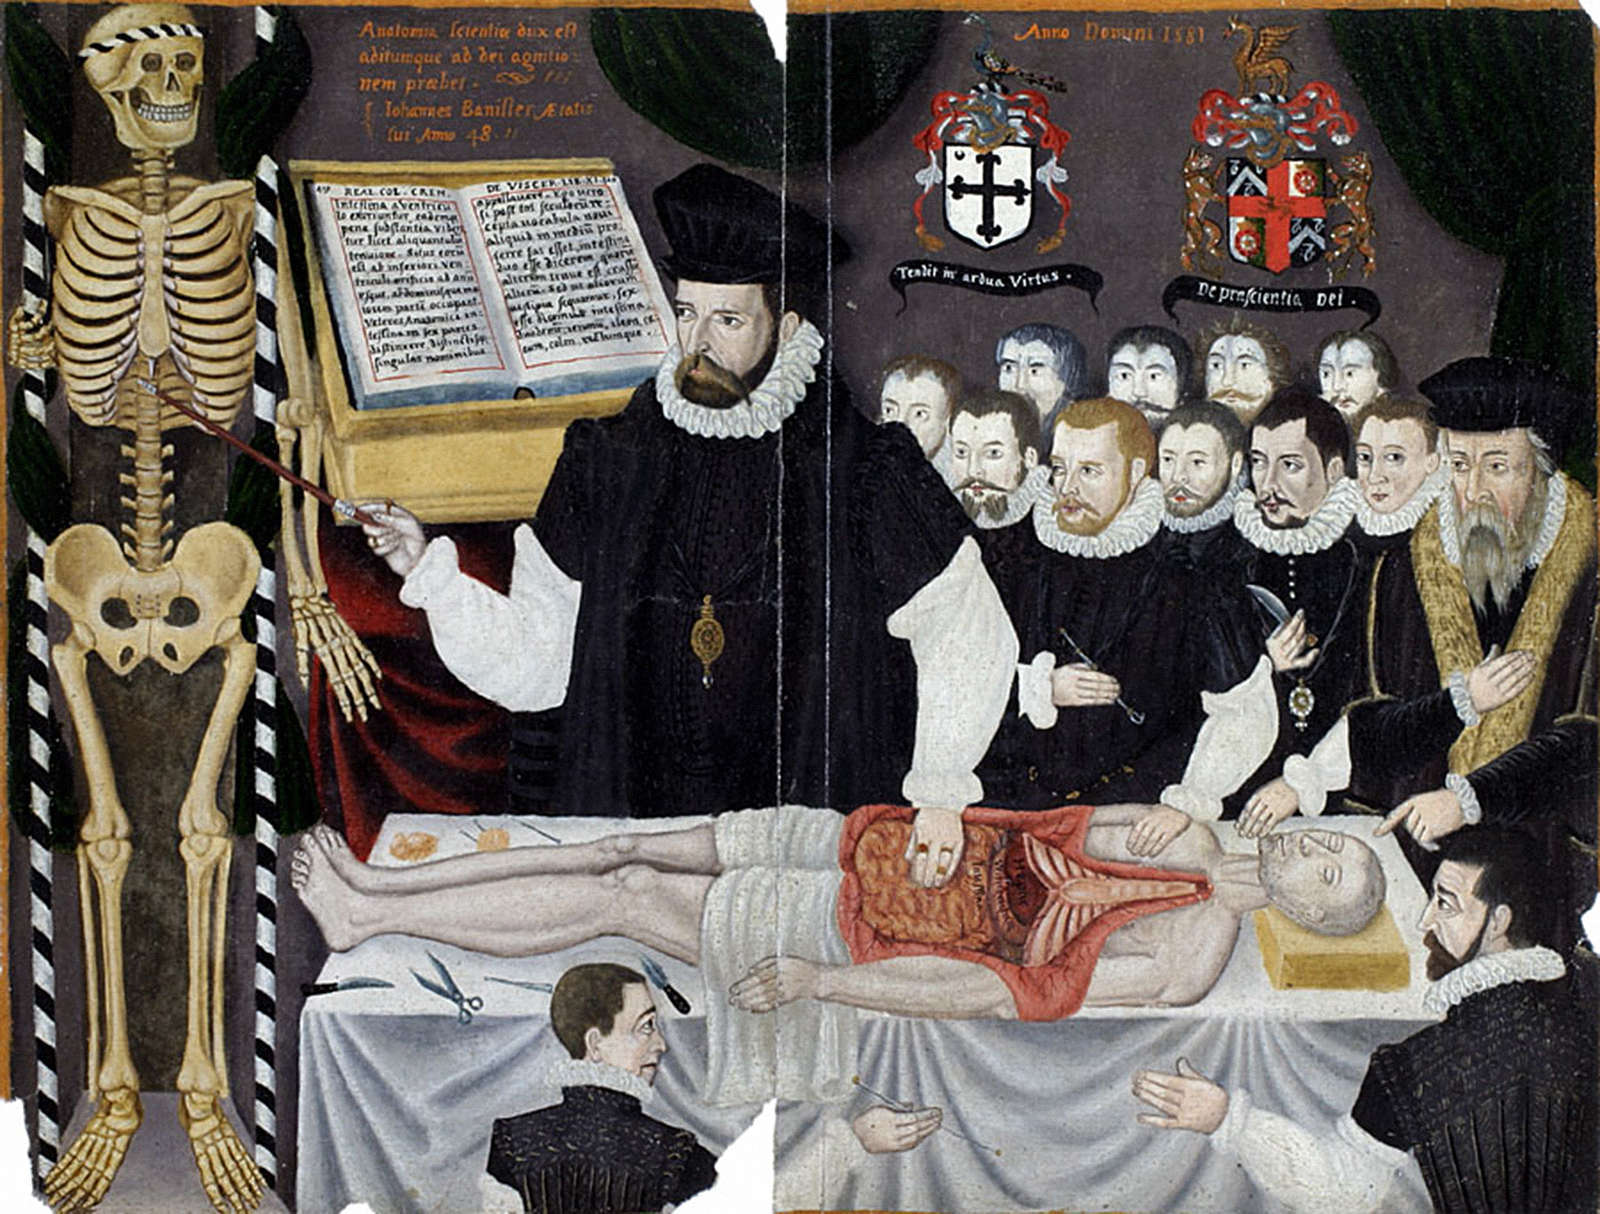 Развитие хирургии в средние века